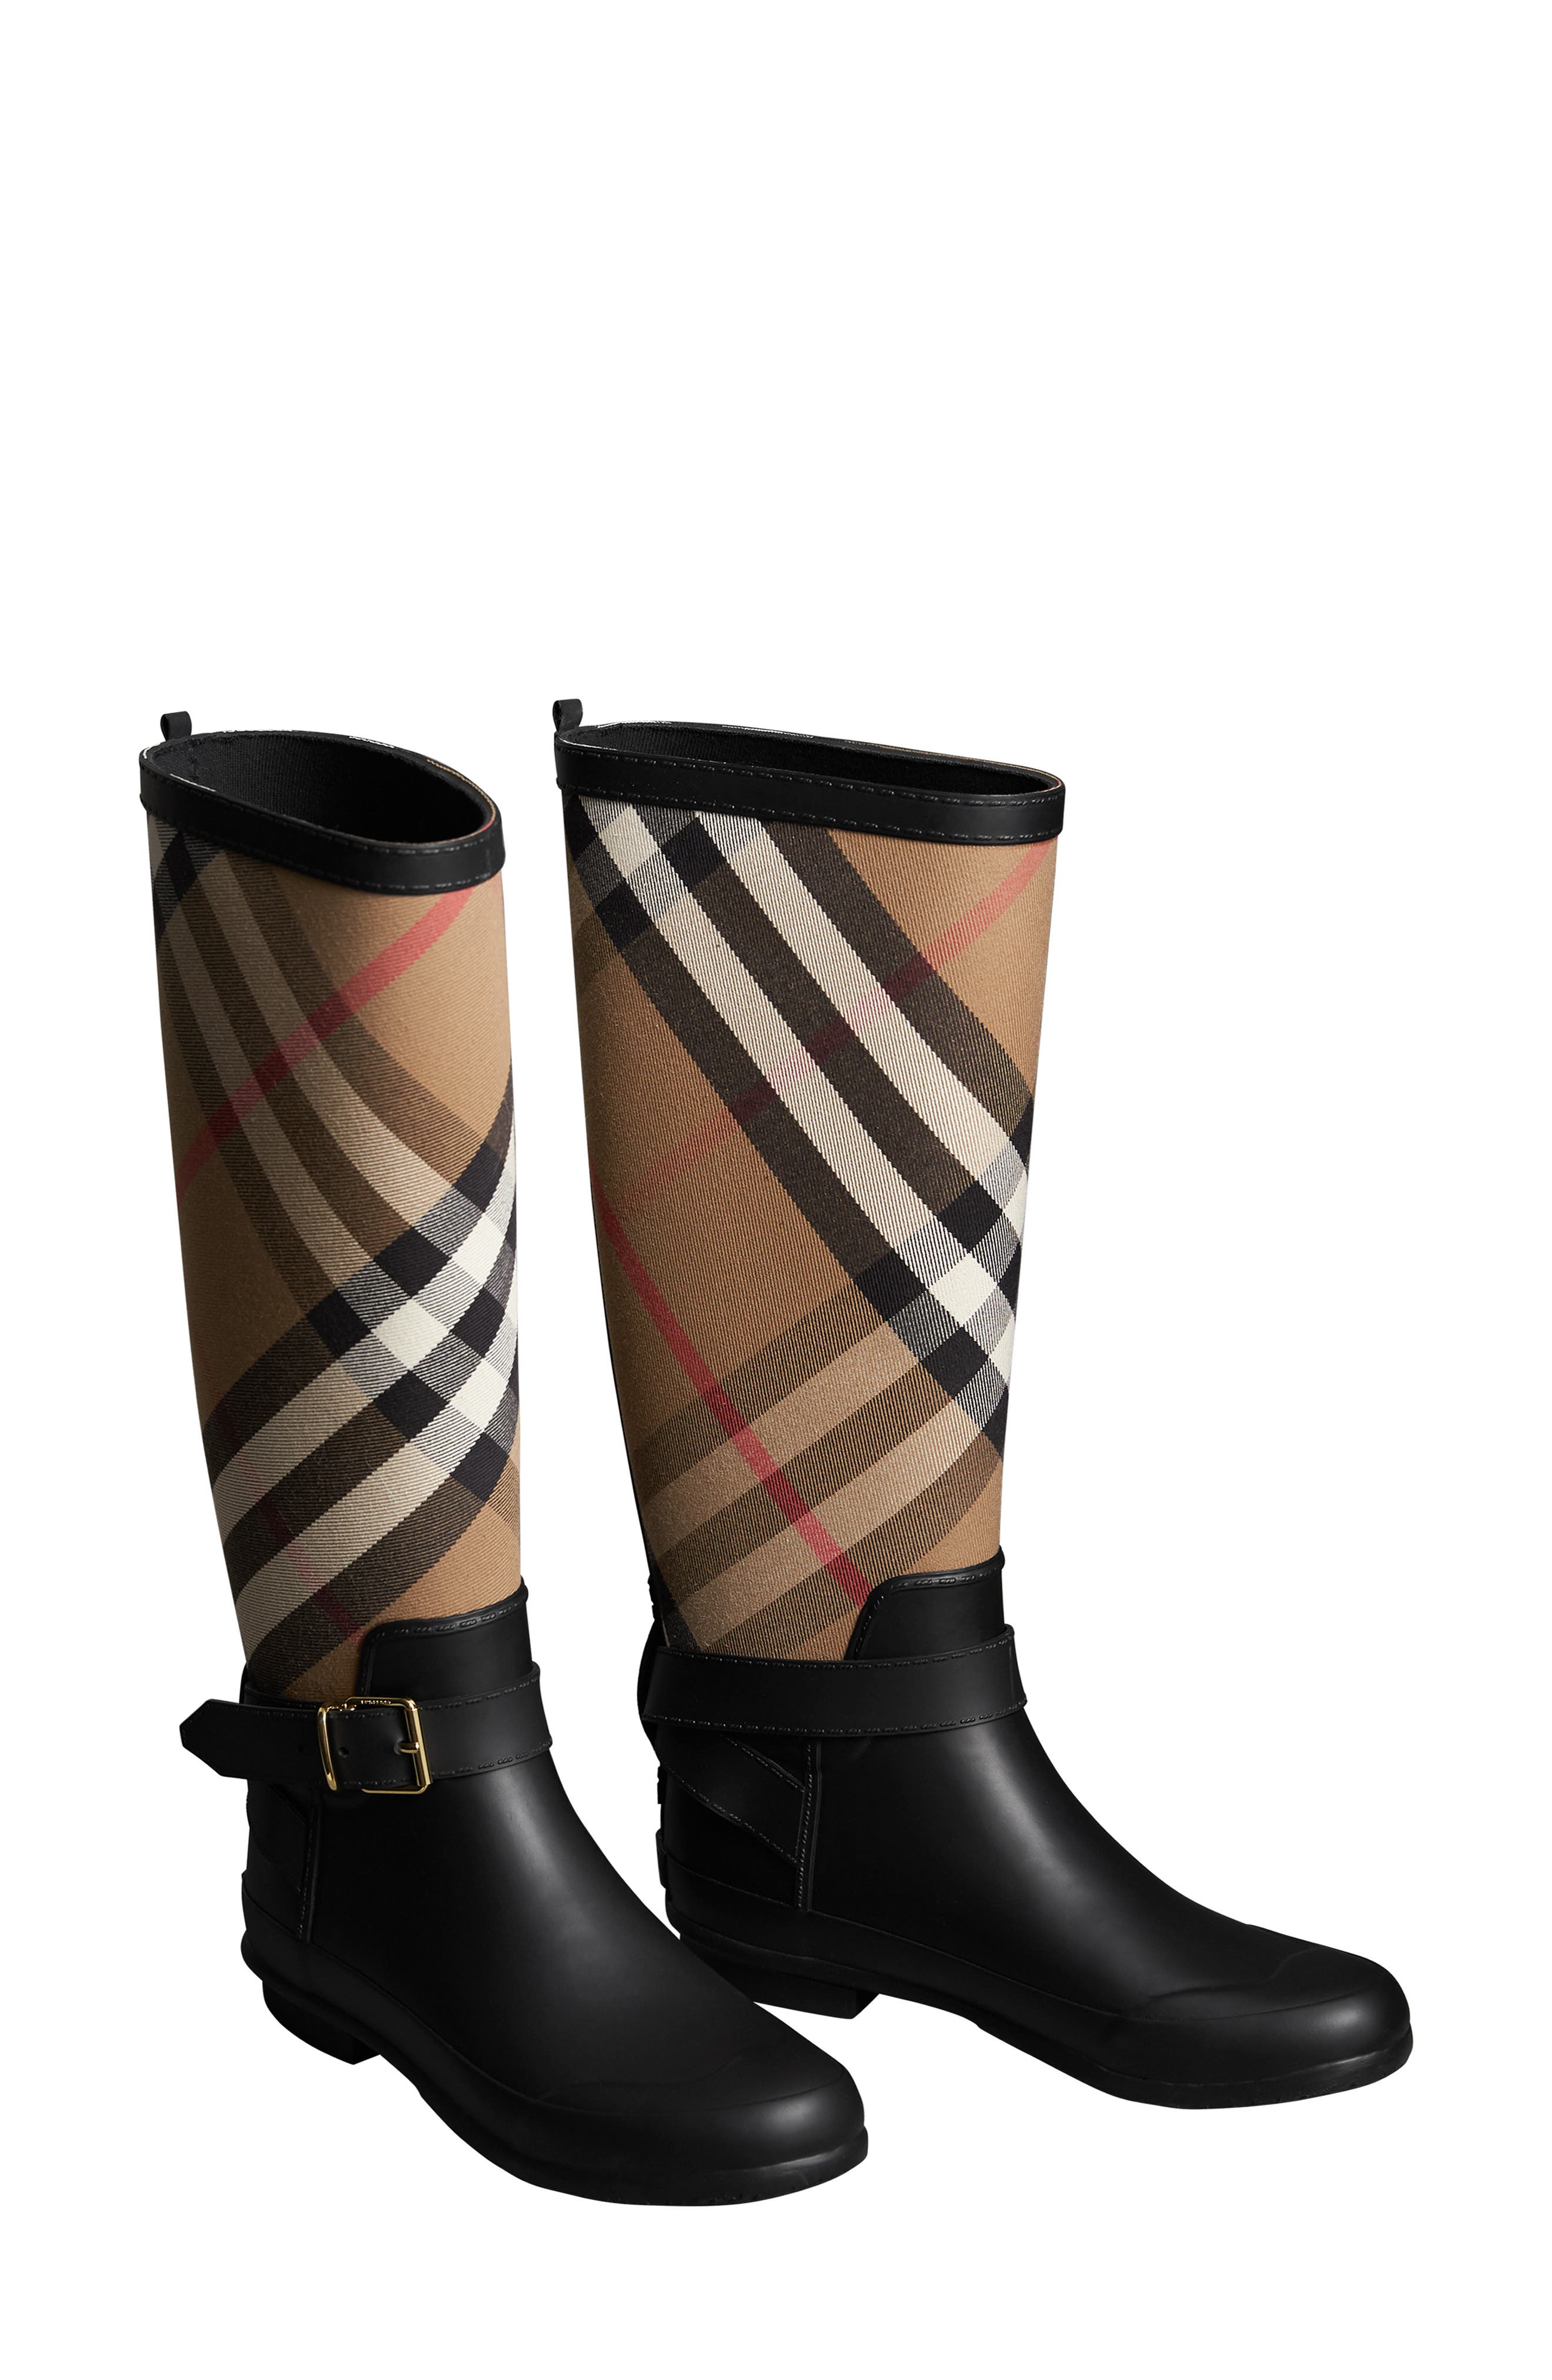 fashion nova rain boots